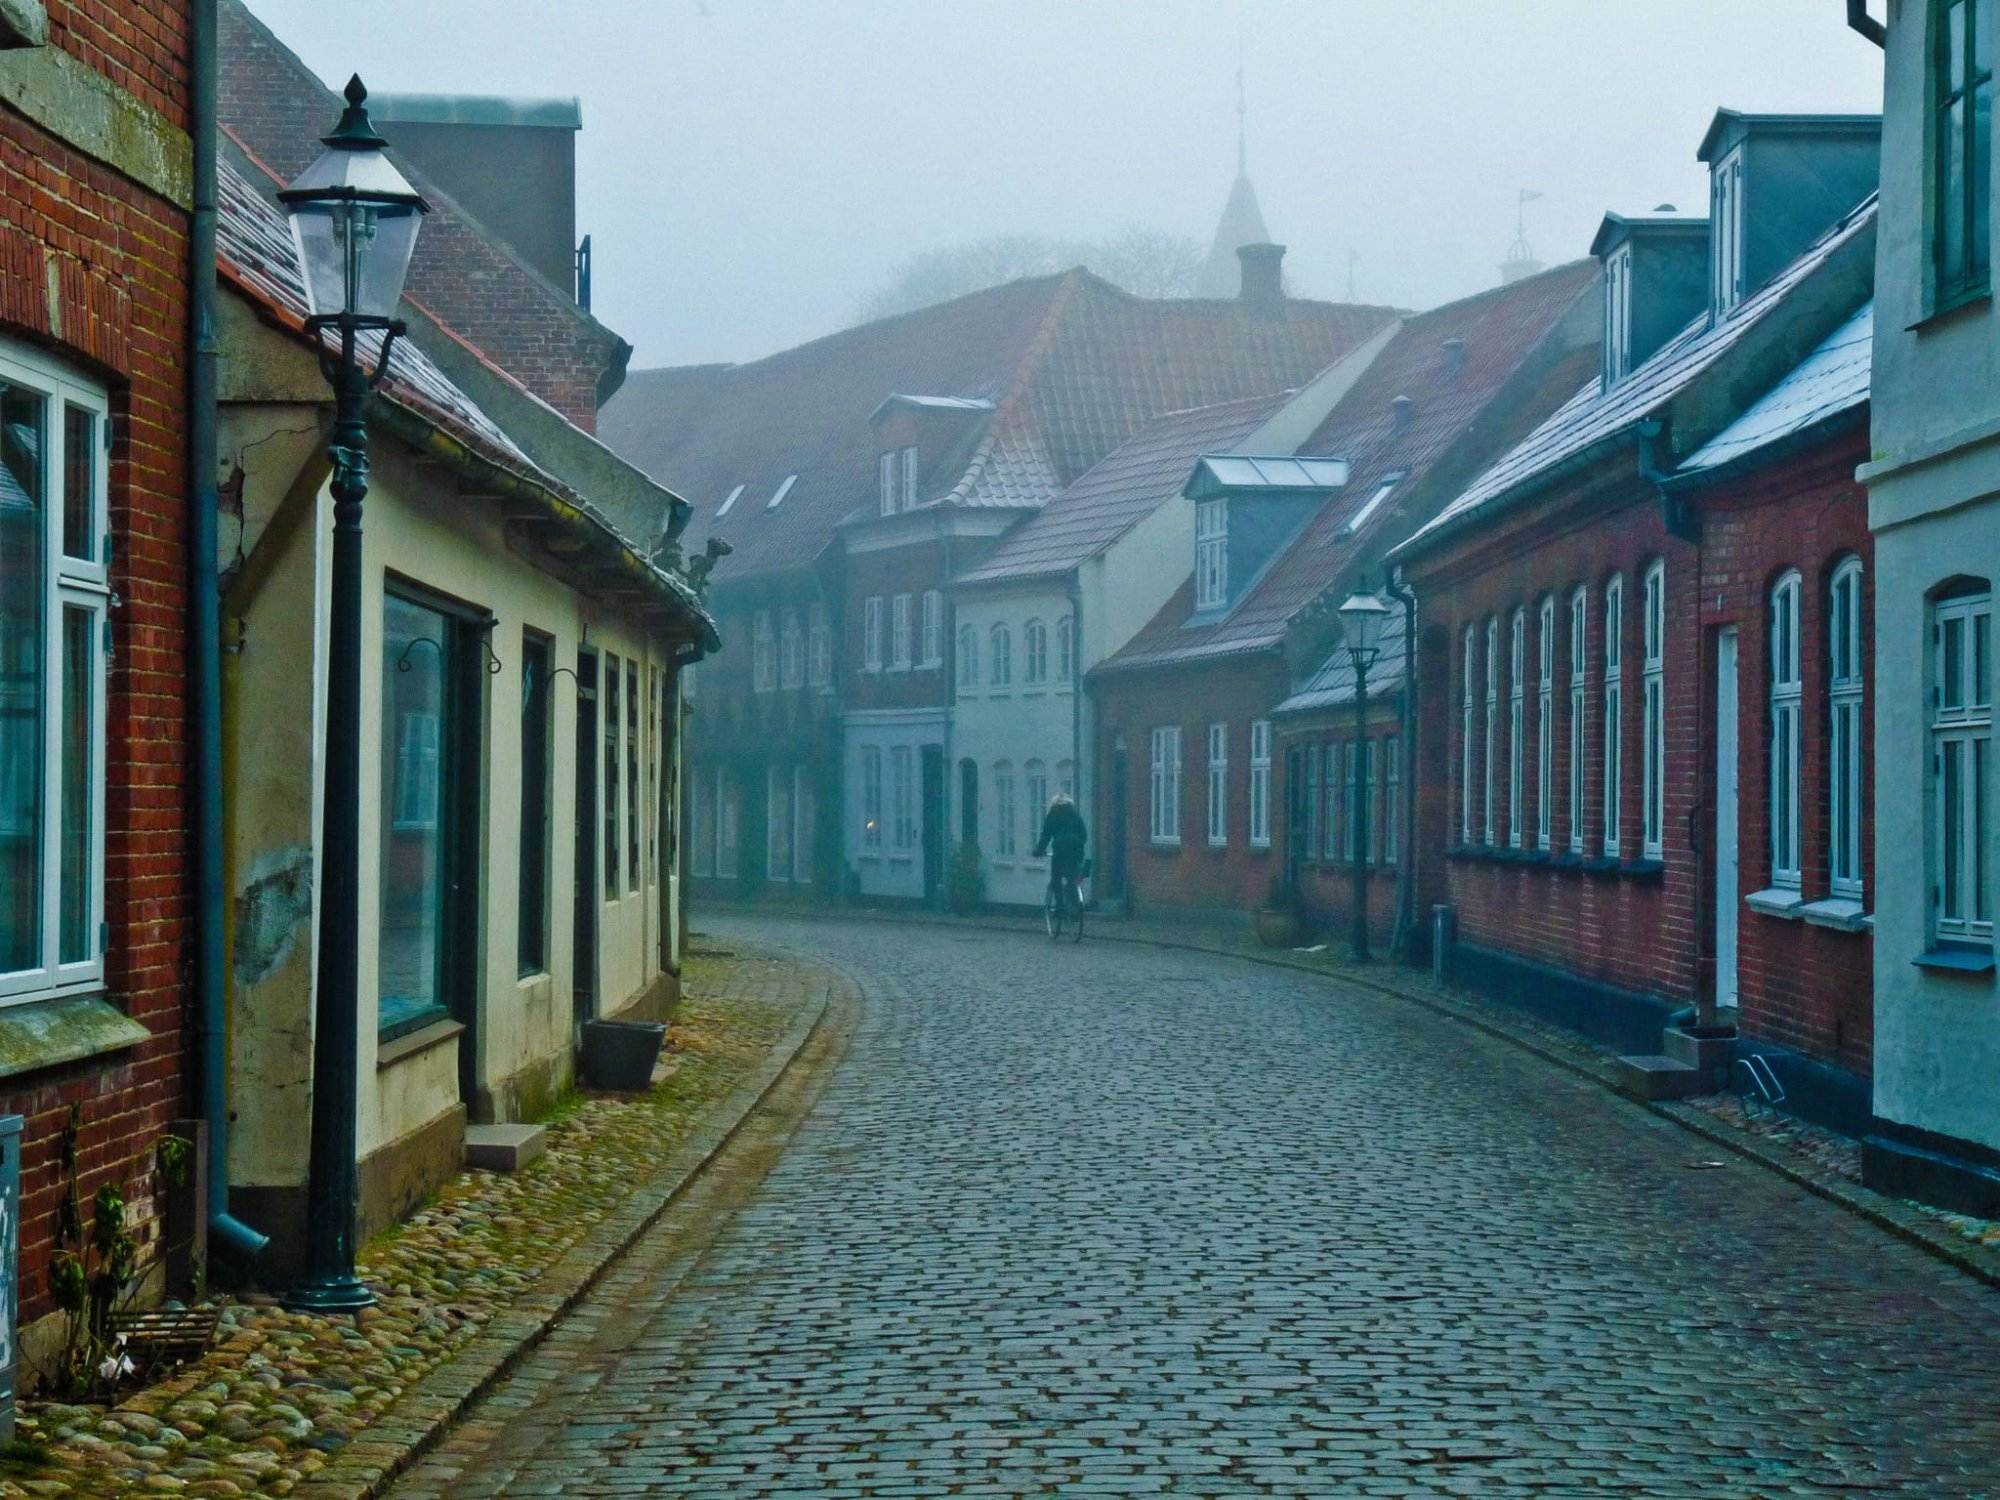 Копенгаген старый город